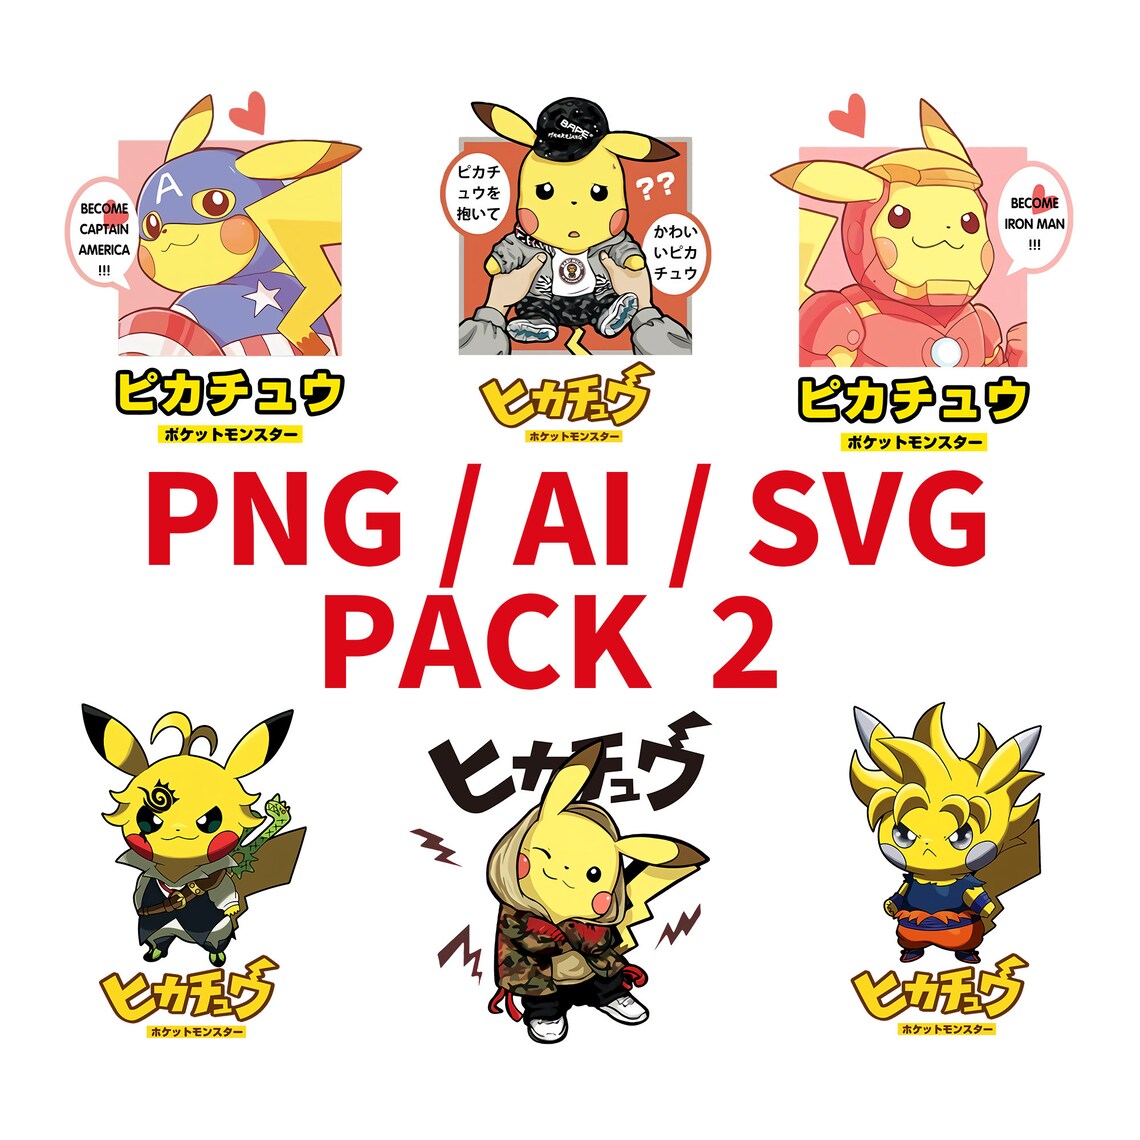 Parody Pokemon Pika Pikachu Japanese Cartoon Anime All in ...